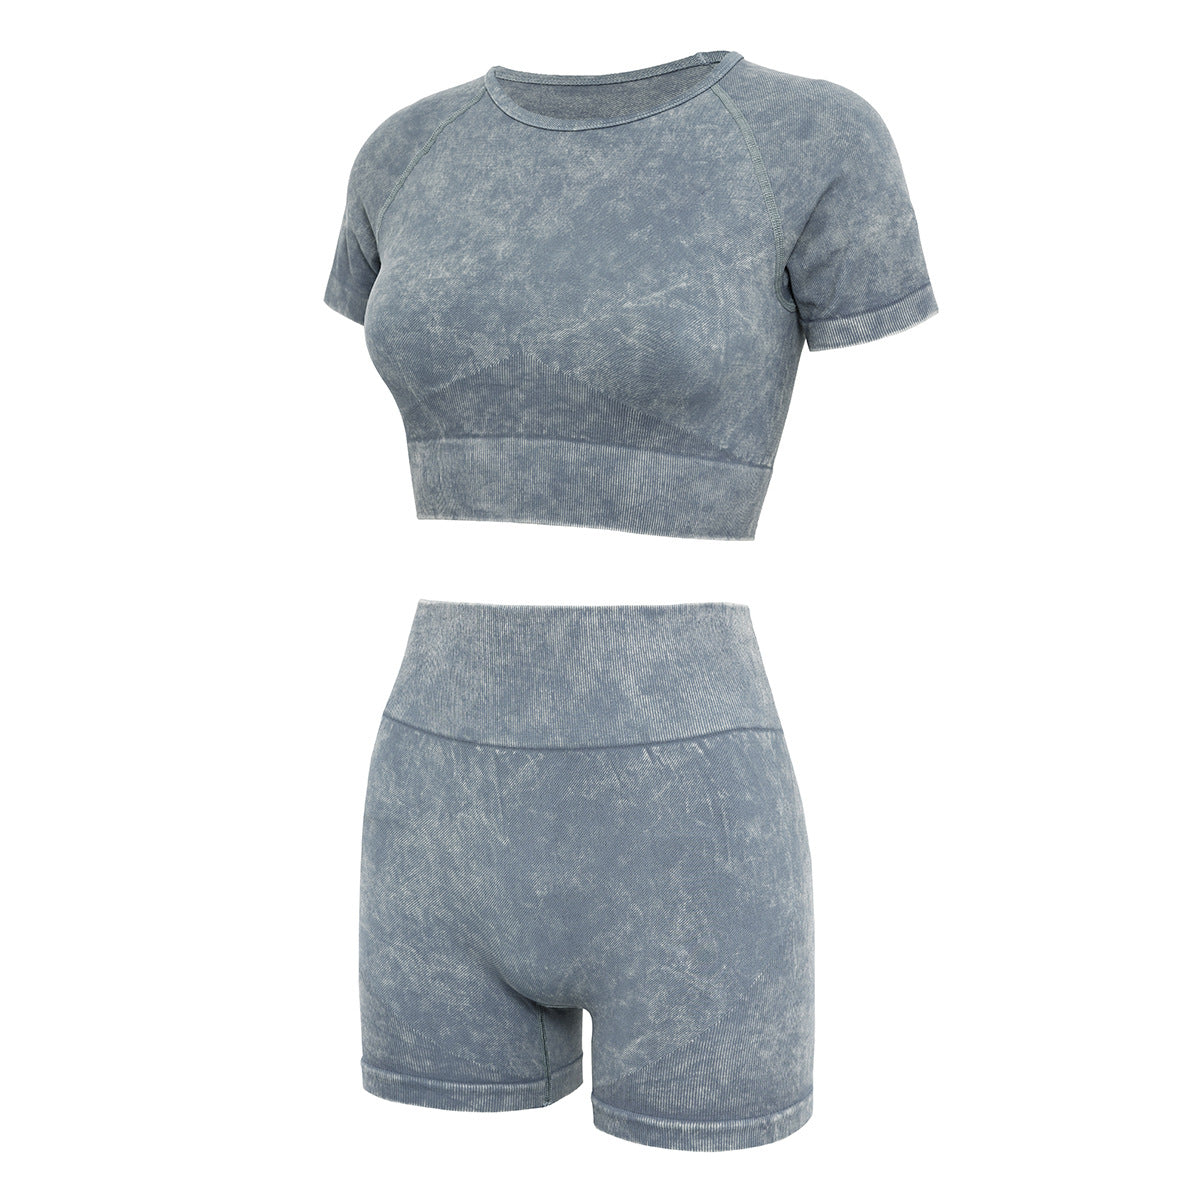 Yoga Suit Suit Women's Summer Shorts Short Sleeve Suit Sand-wash Imitation Denim Fitness Suit Yoga Wear